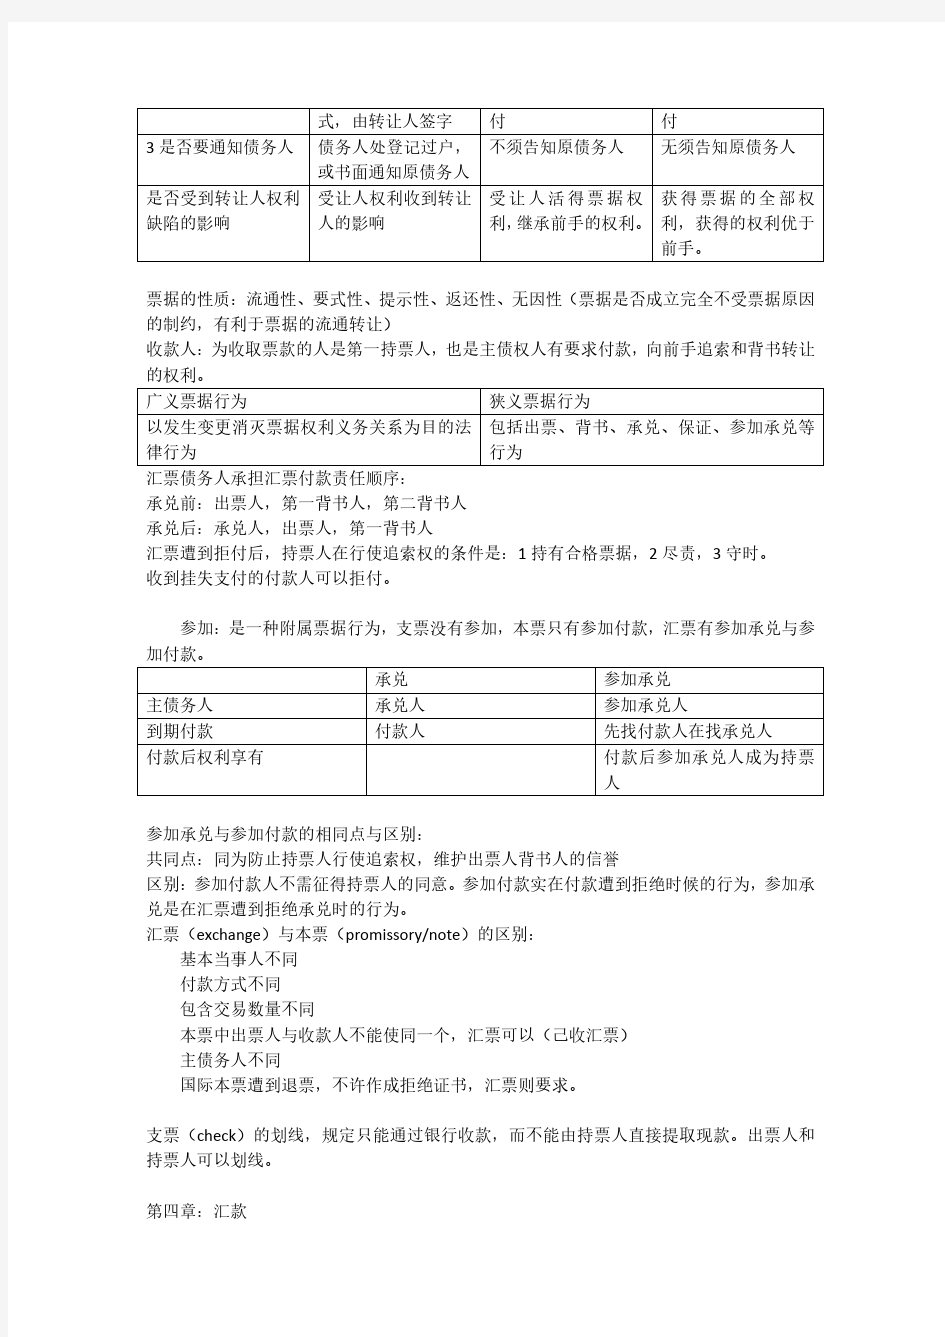 苏宗祥第五版国际结算期末考试总结重点